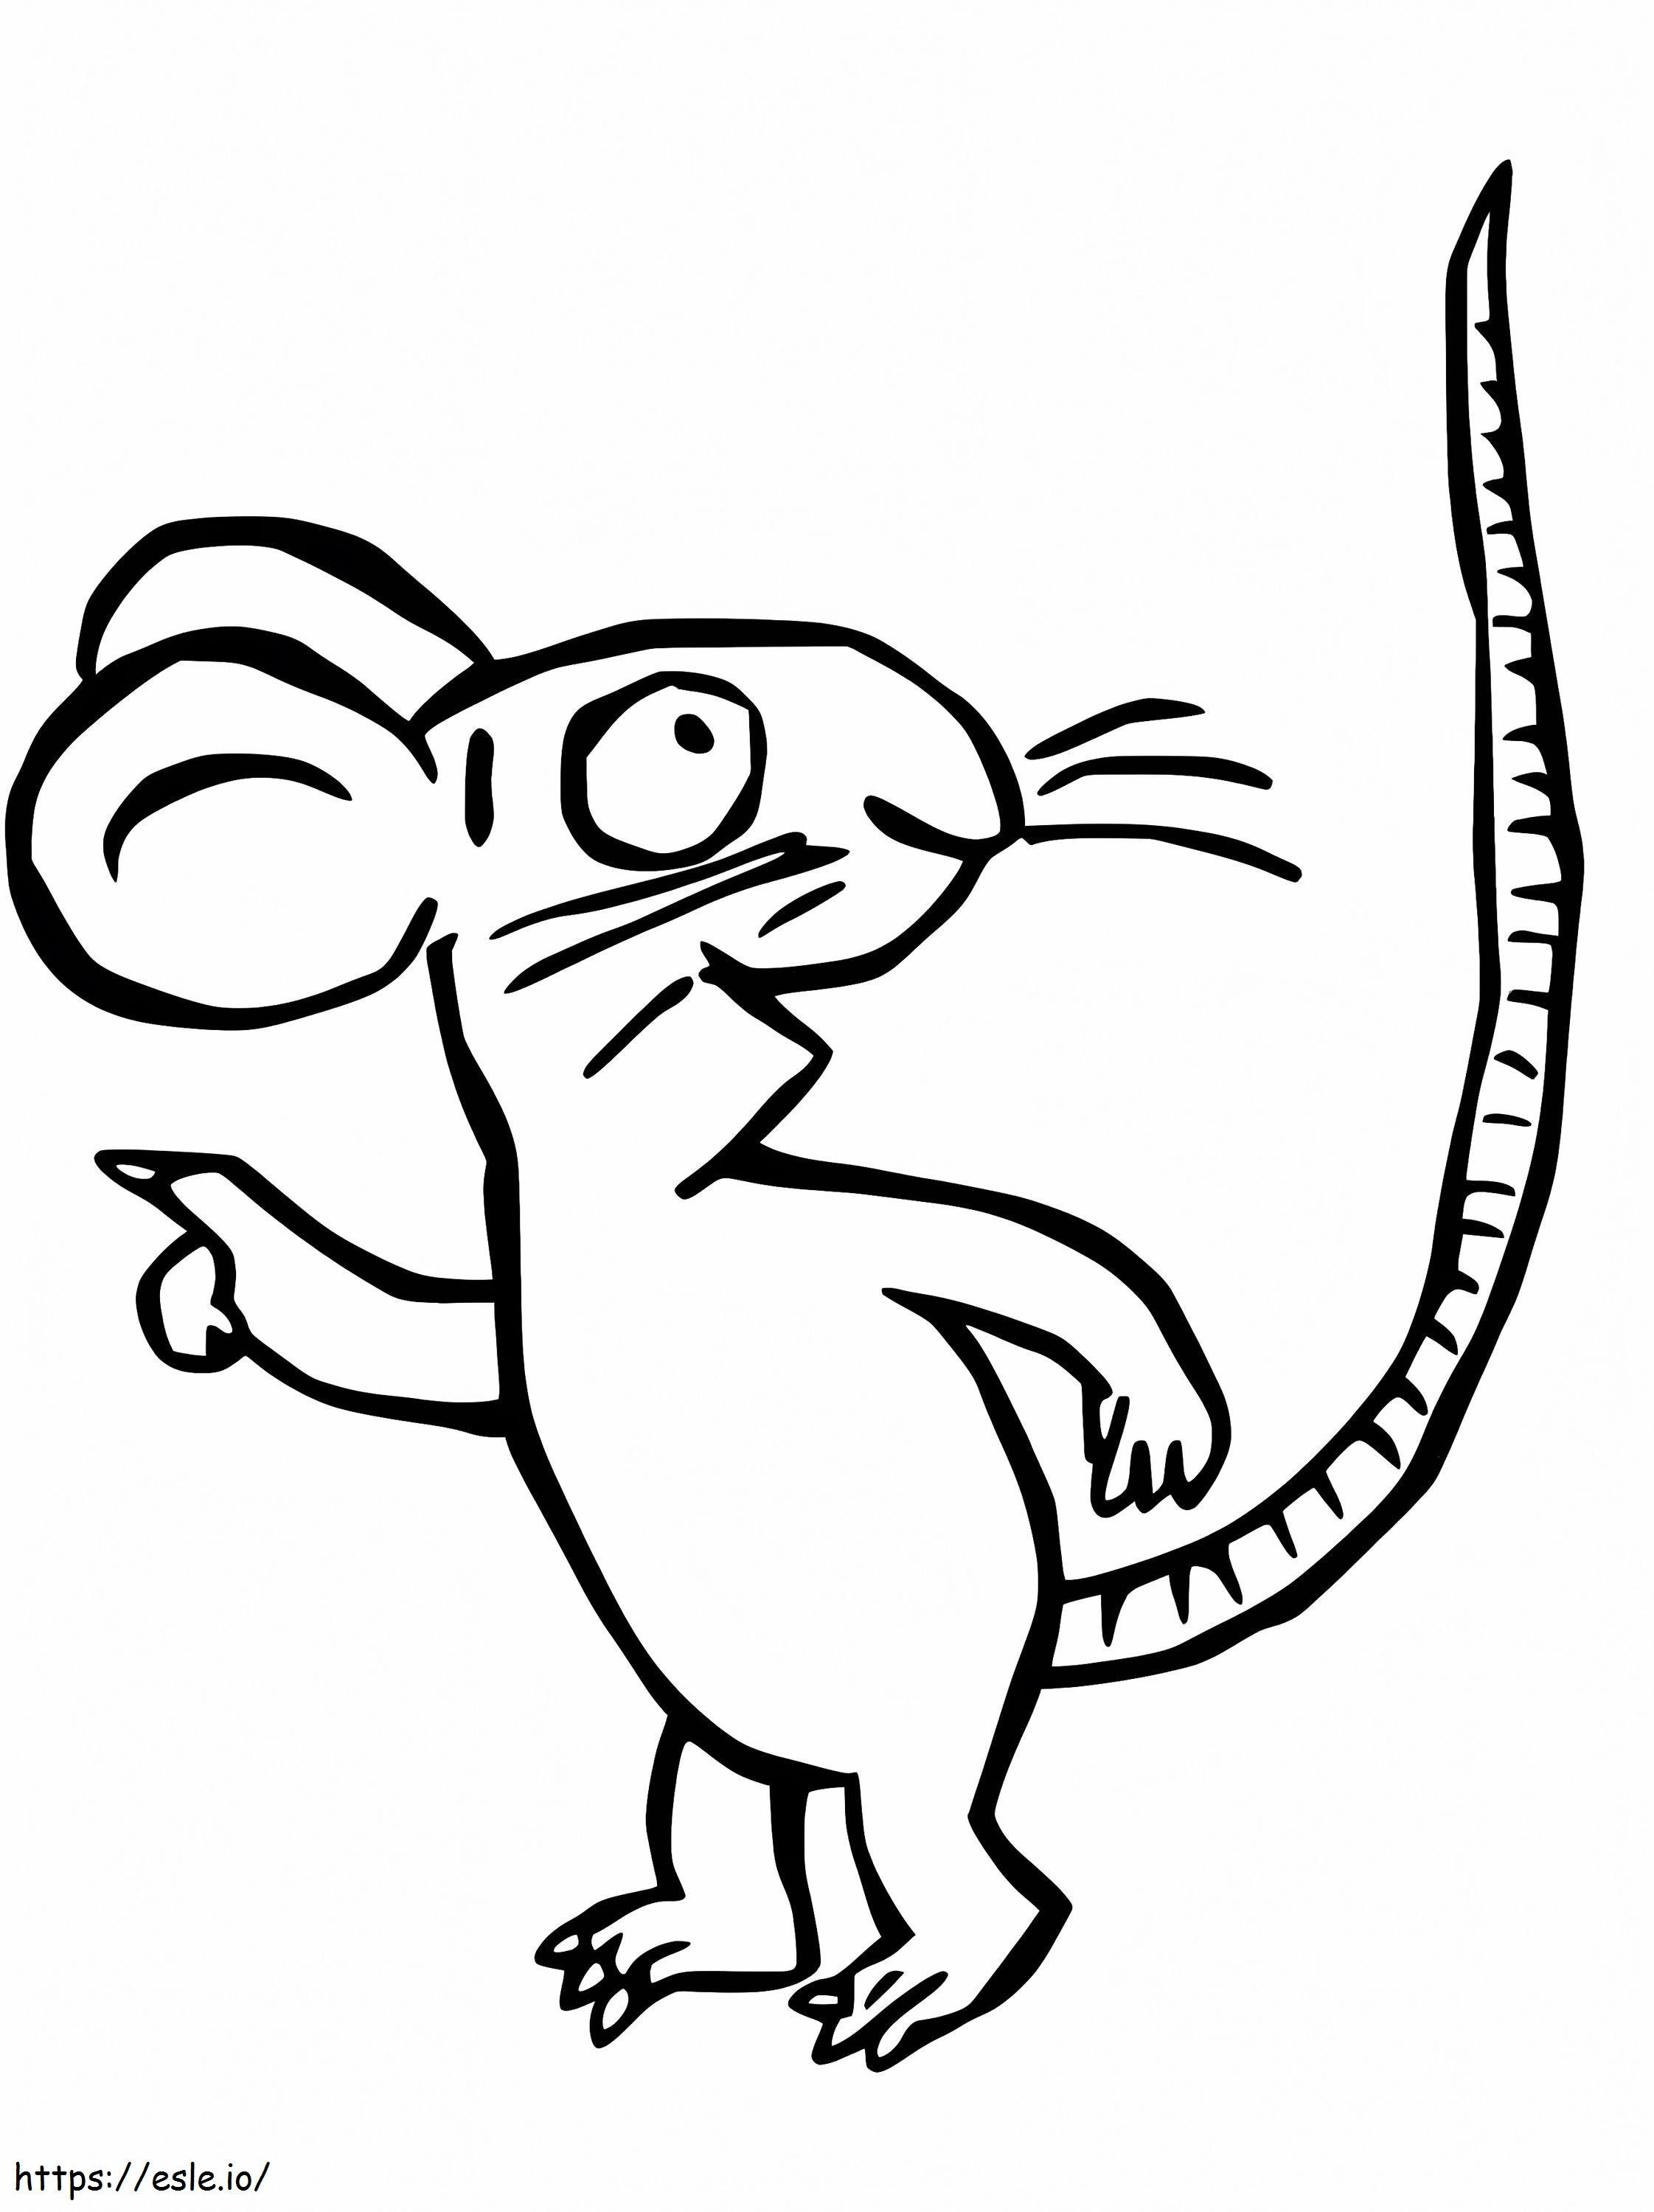 Rato do Grúfalo para colorir